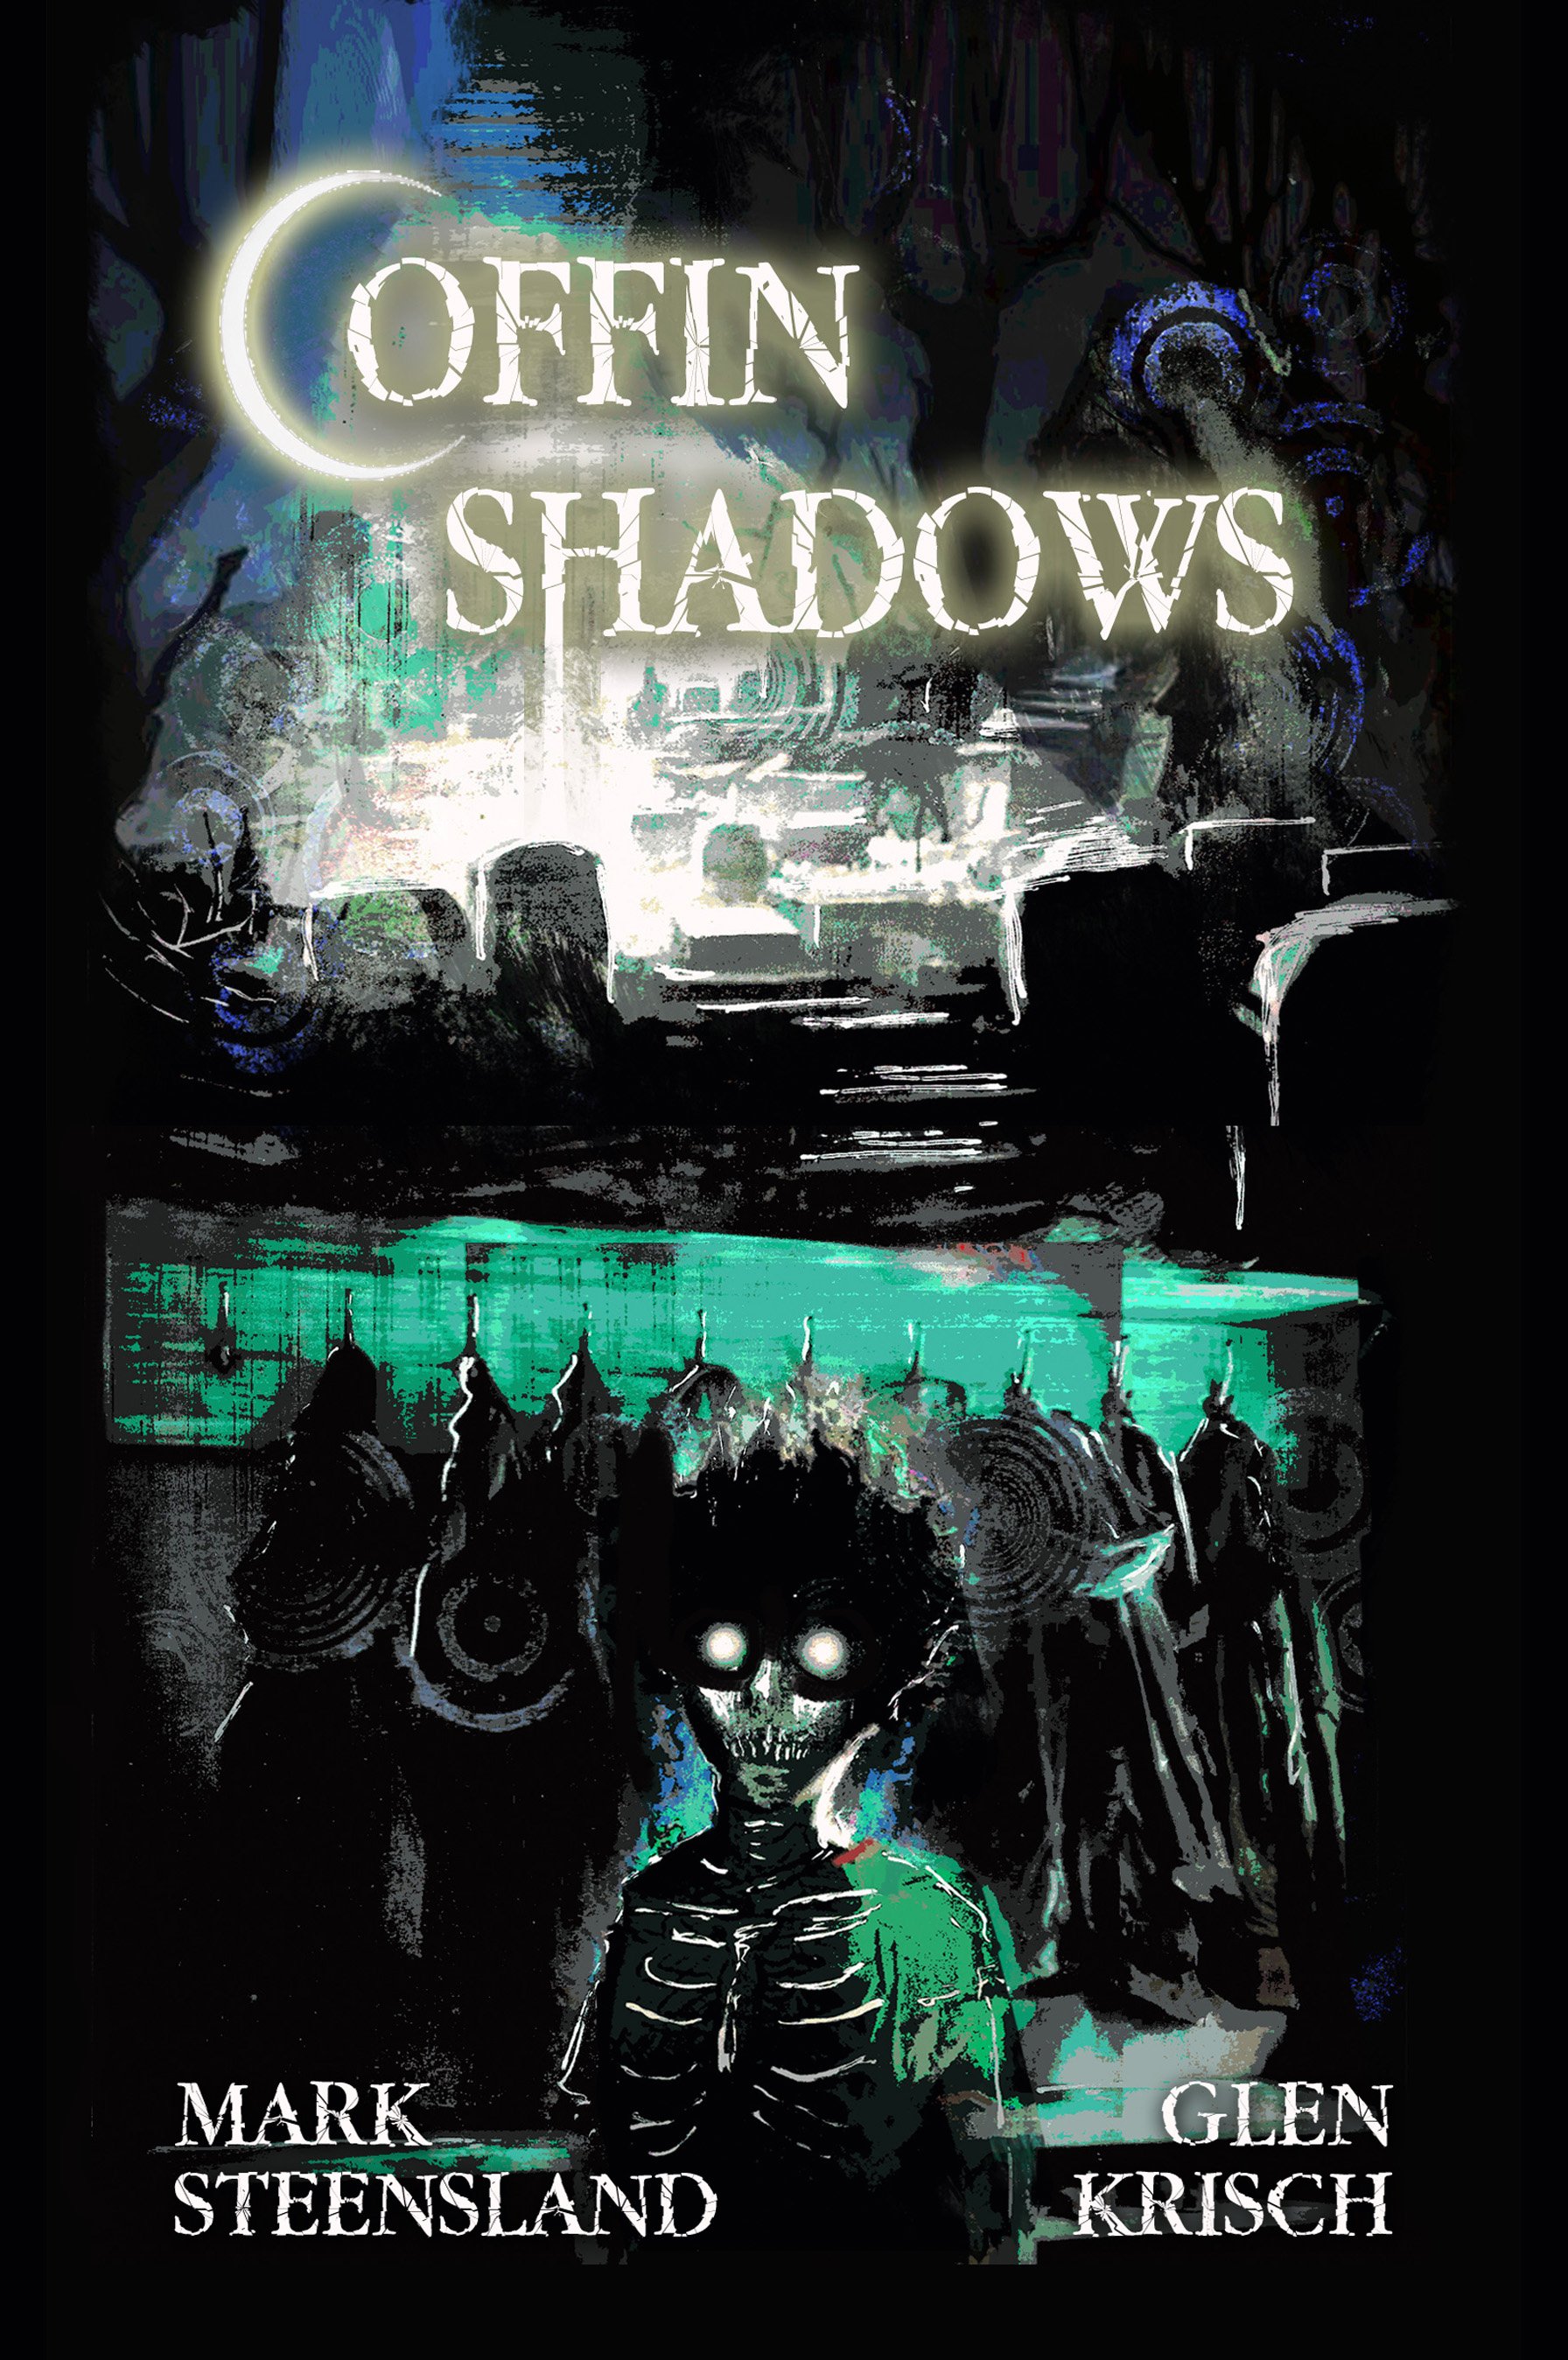 Coffin Shadows, by Mark Steensland and Glen Krisch